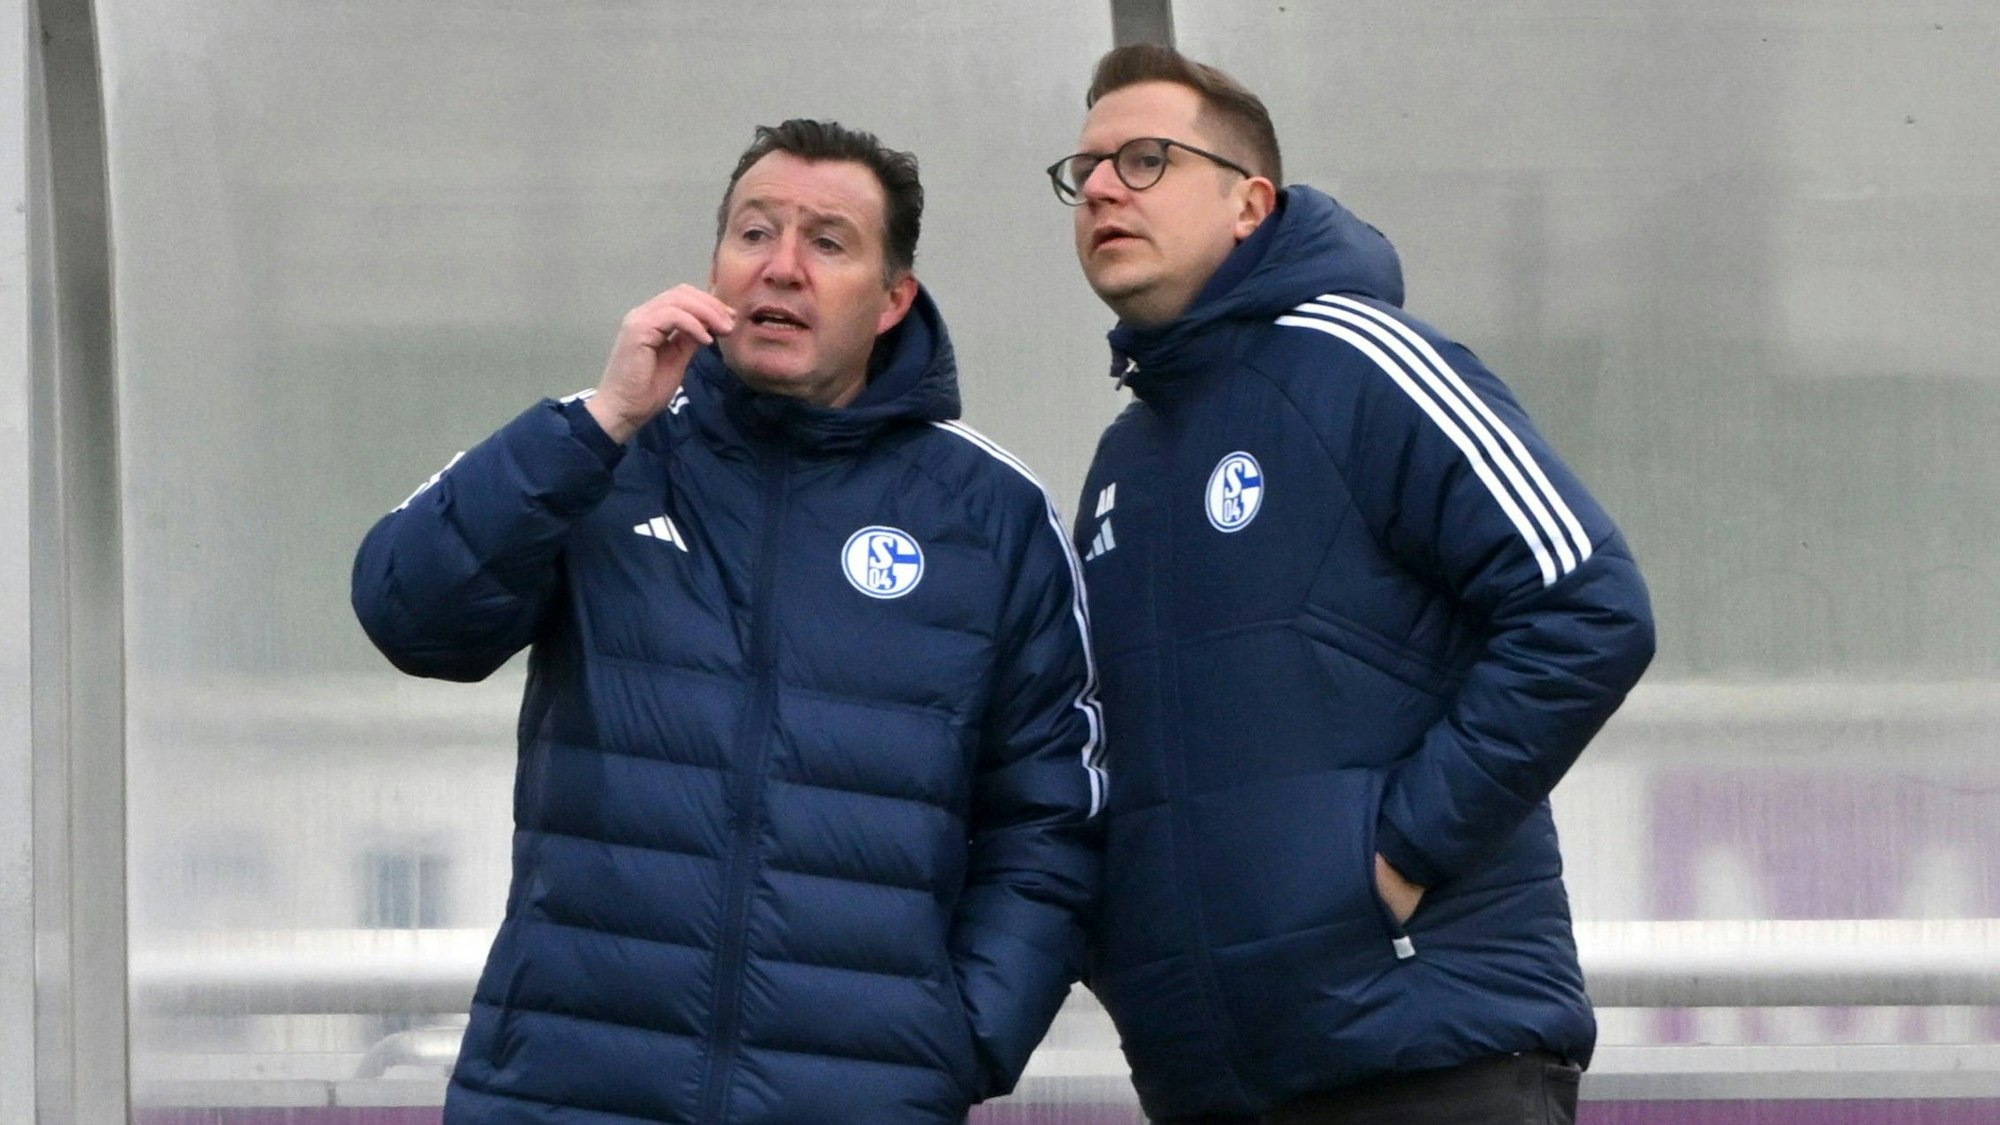 Marc Wilmots und André Hechelmann stehen beim Training von Schalke 04 am Spielfeldrand und unterhalten sich.